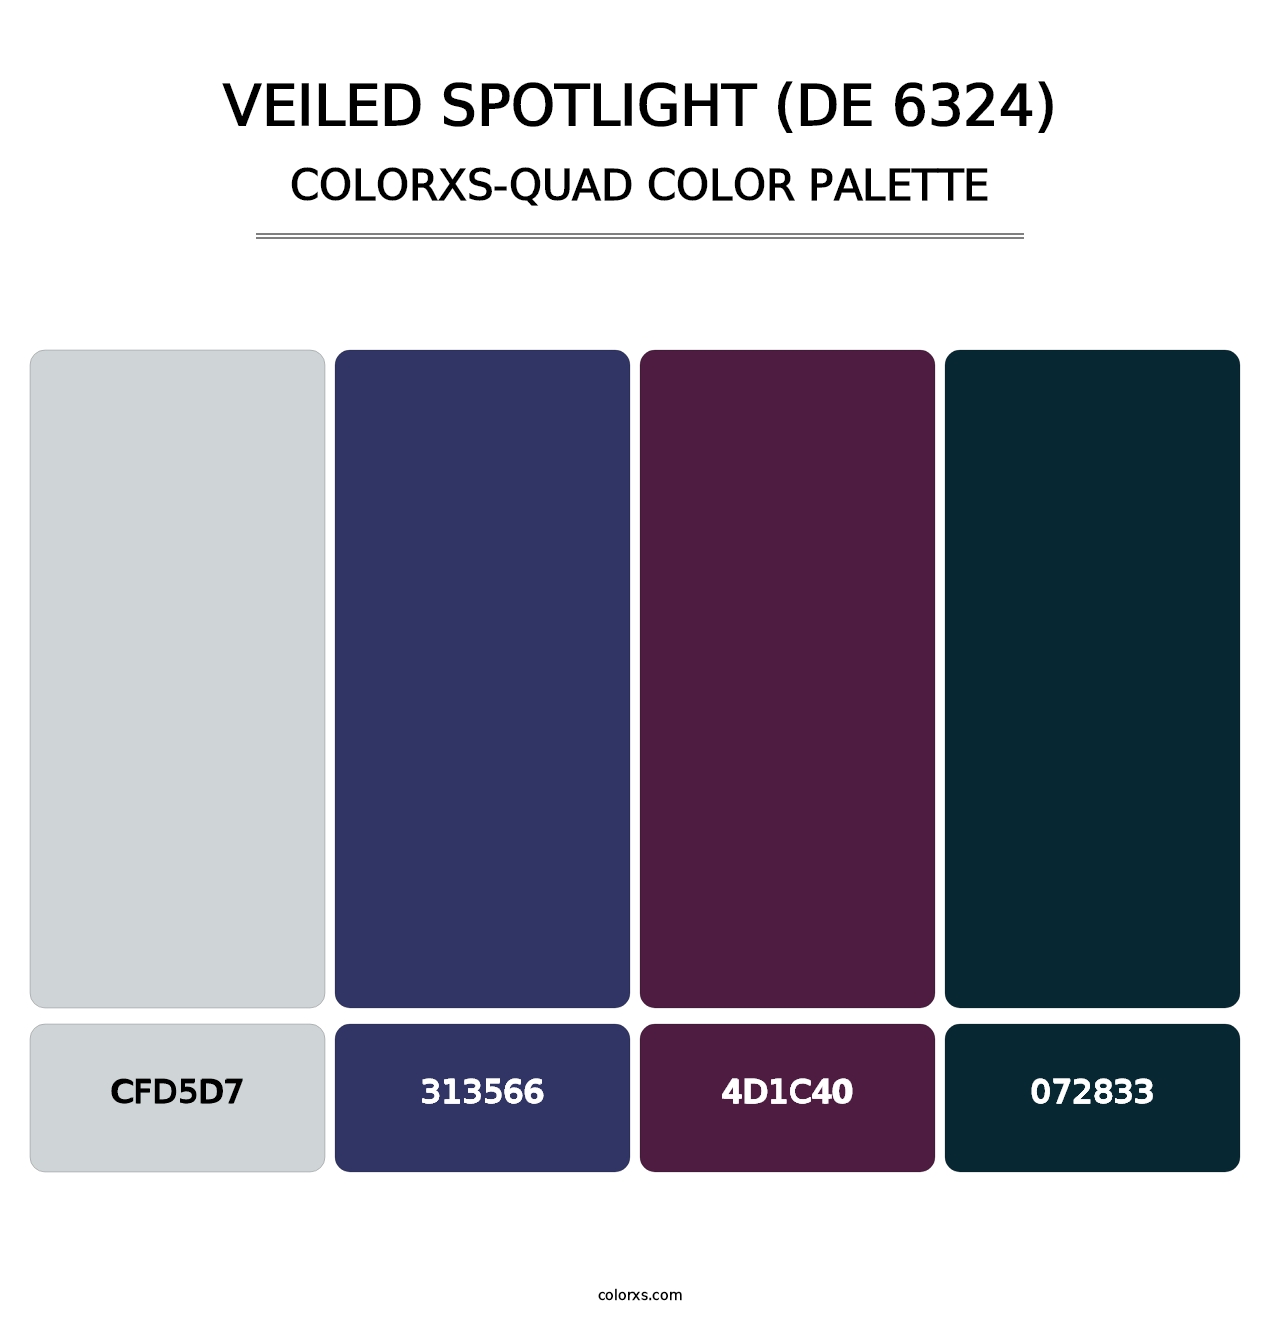 Veiled Spotlight (DE 6324) - Colorxs Quad Palette